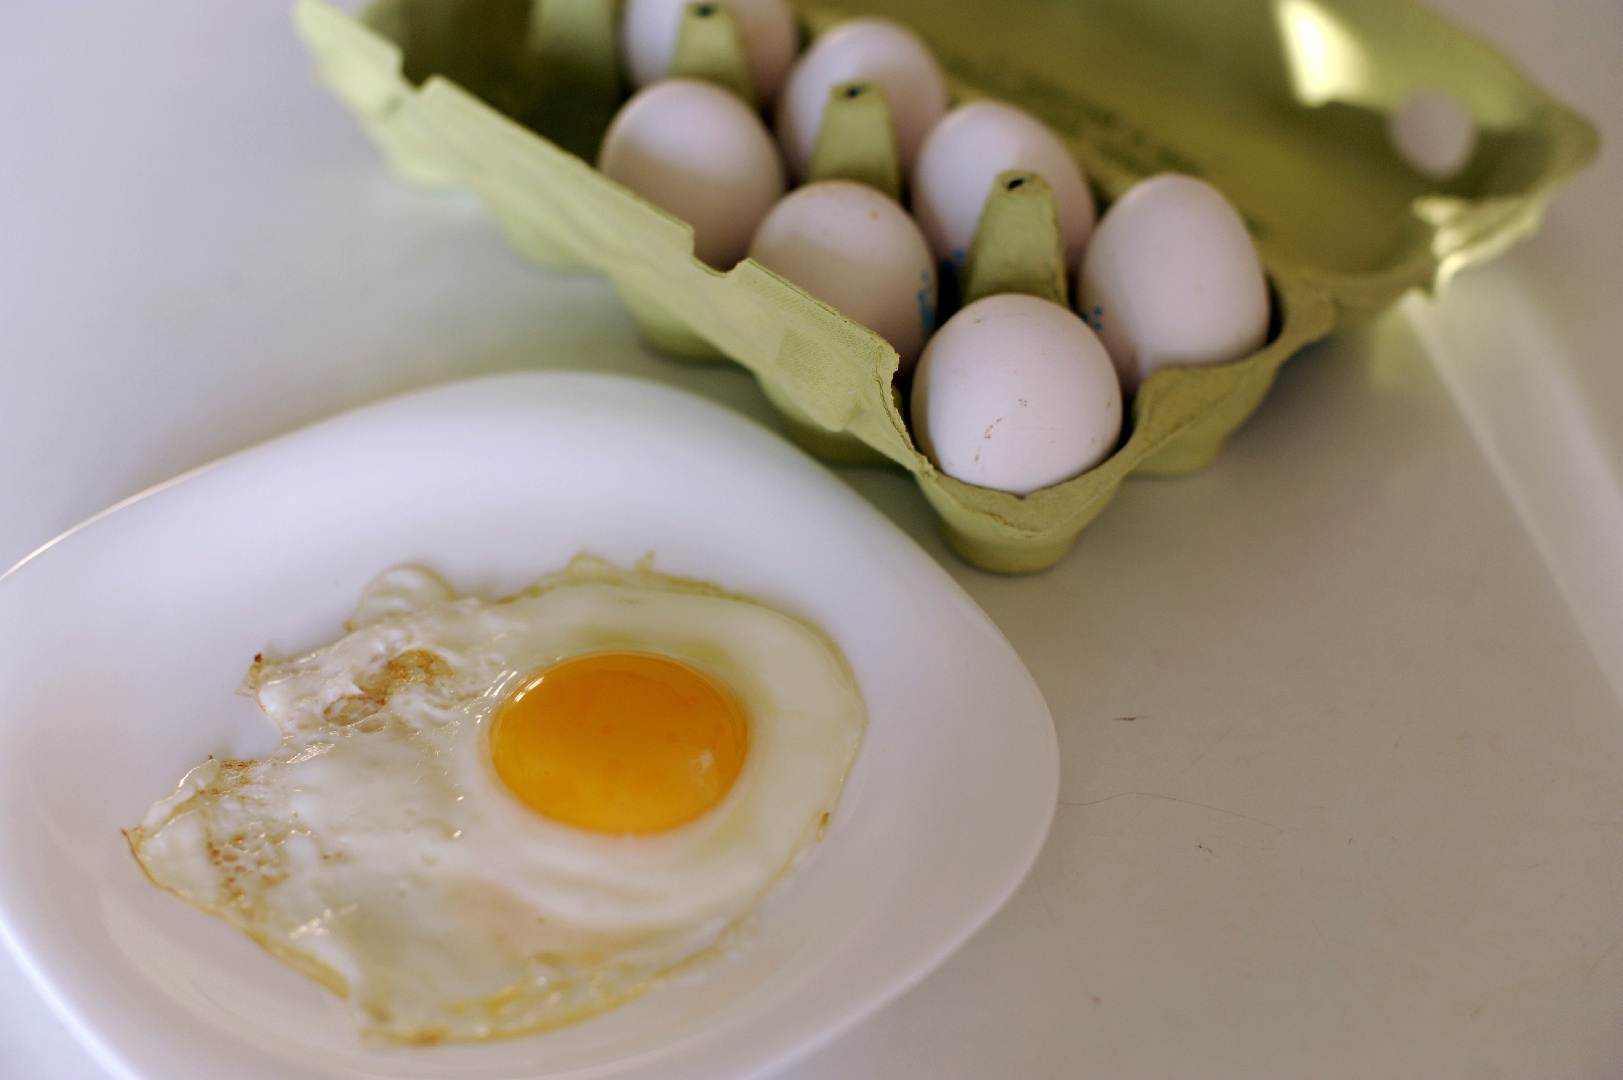 Сюрприз! Что делает сальмонелла в яйцах Kinder и насколько она опасна?